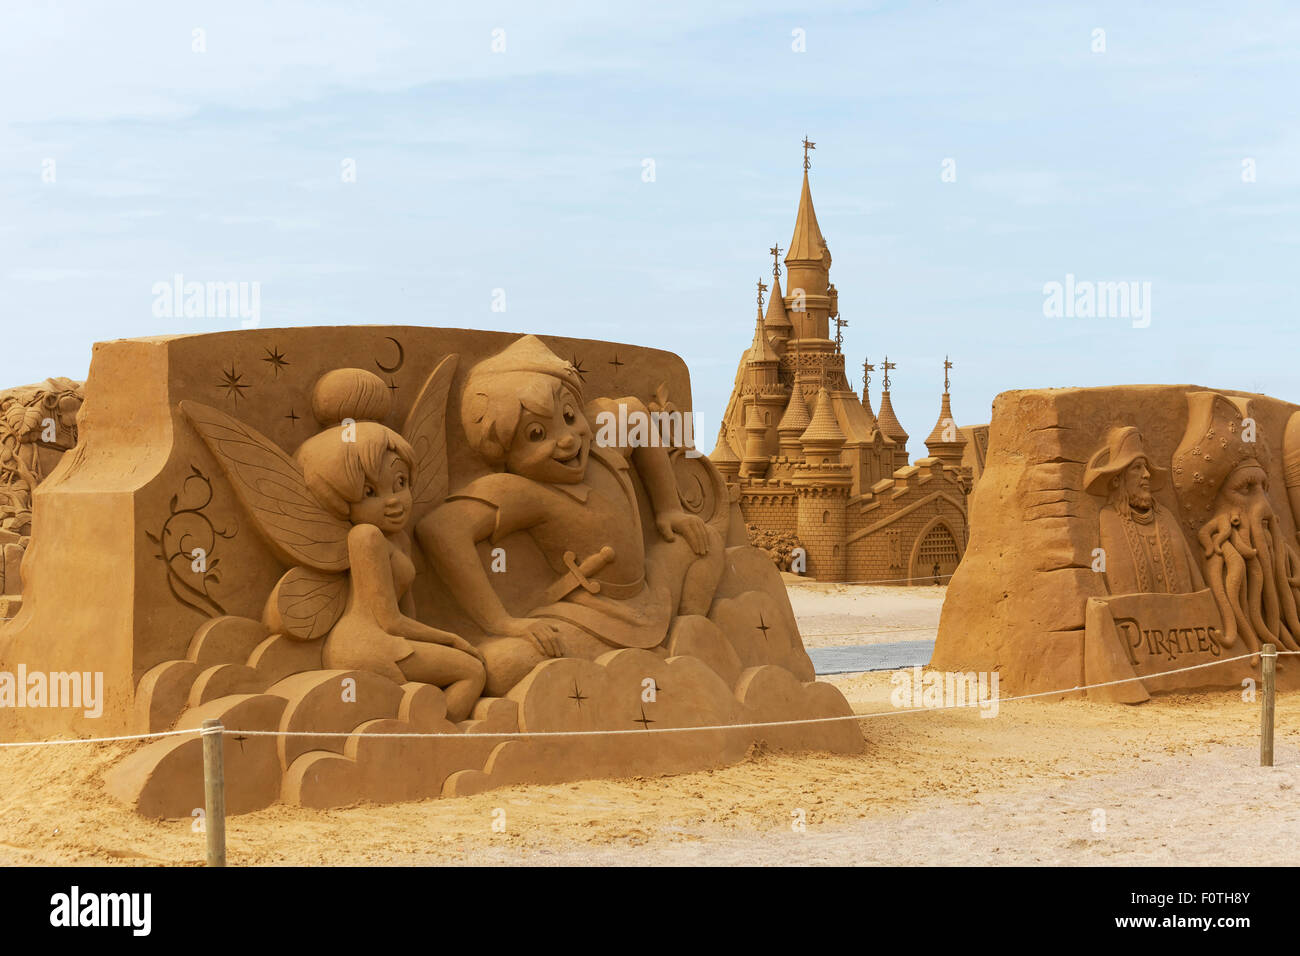 Peter Pan y elfos, dibujos animados de Walt Disney y el castillo de cuento de hadas de arena, escultura de arena festival sol de verano congelados, Oostende Foto de stock